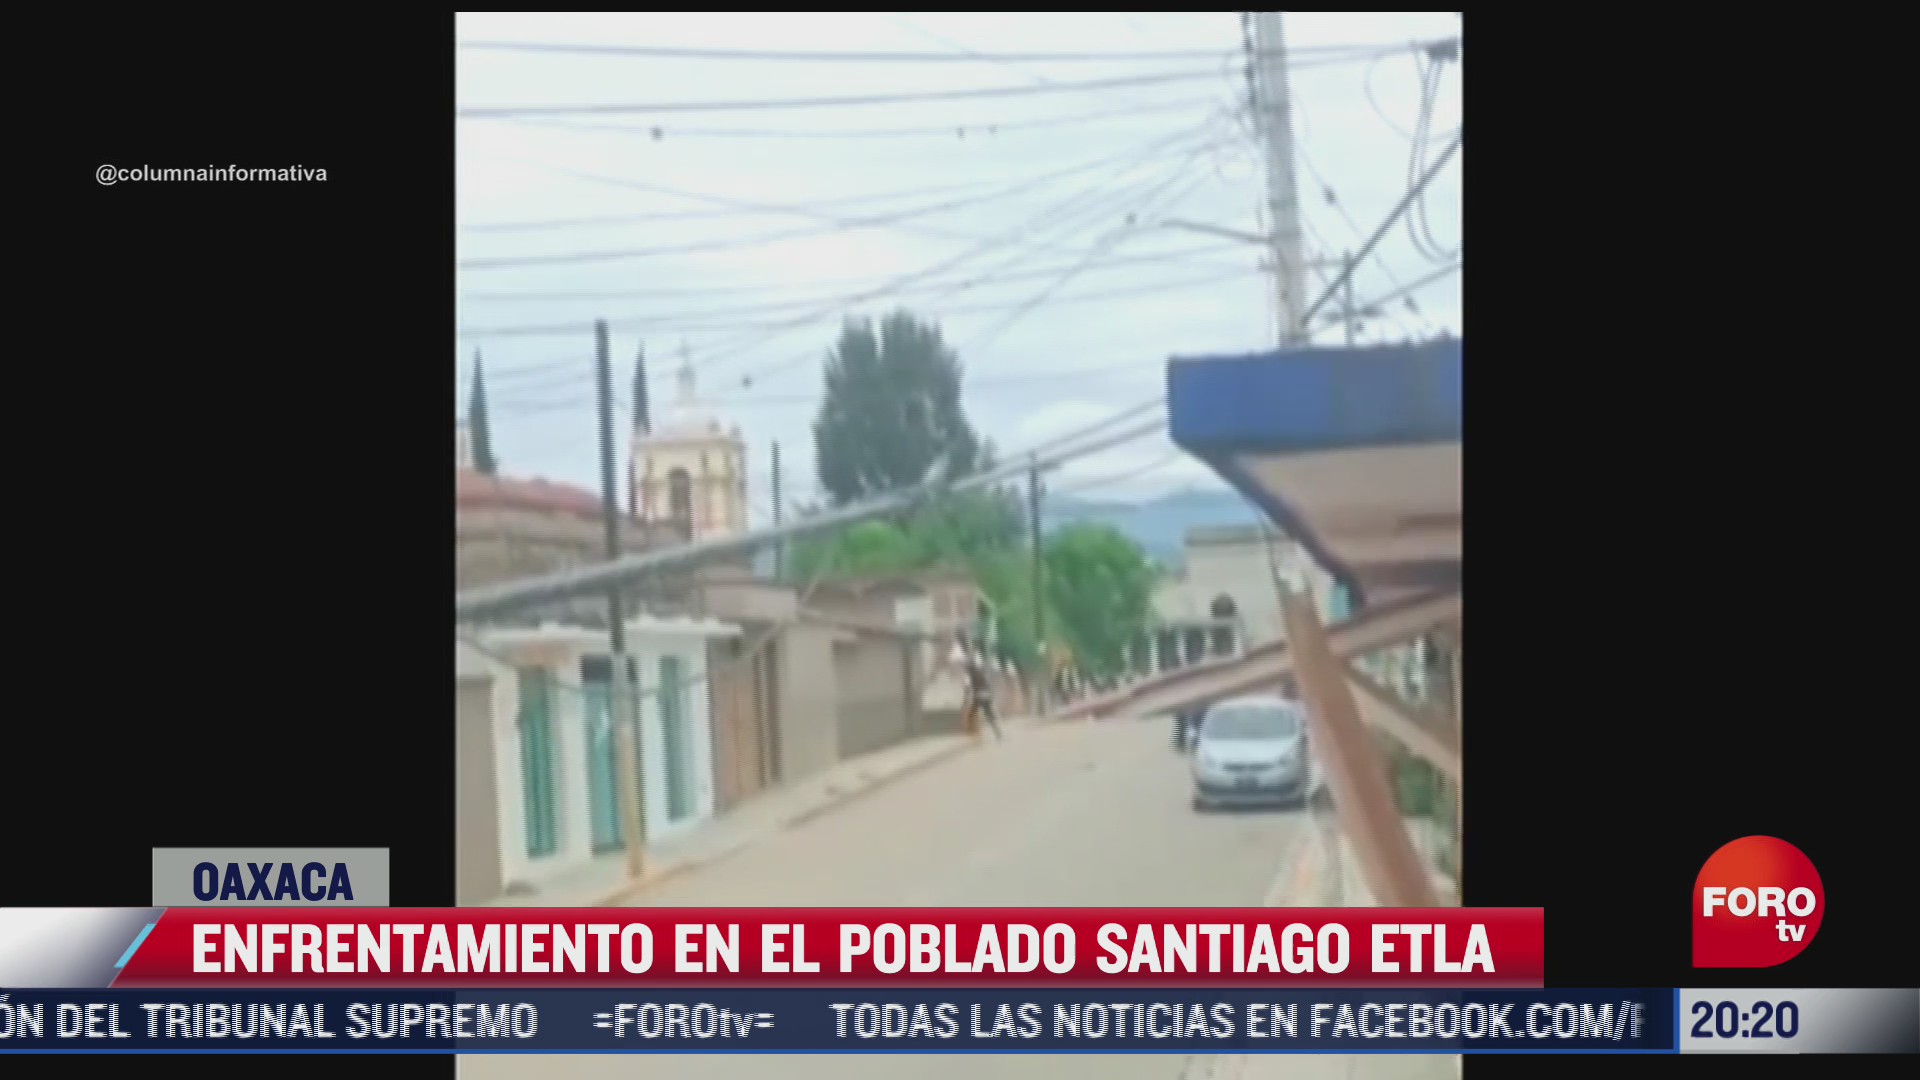 captan enfrentamiento en el poblado santiago etla oaxaca